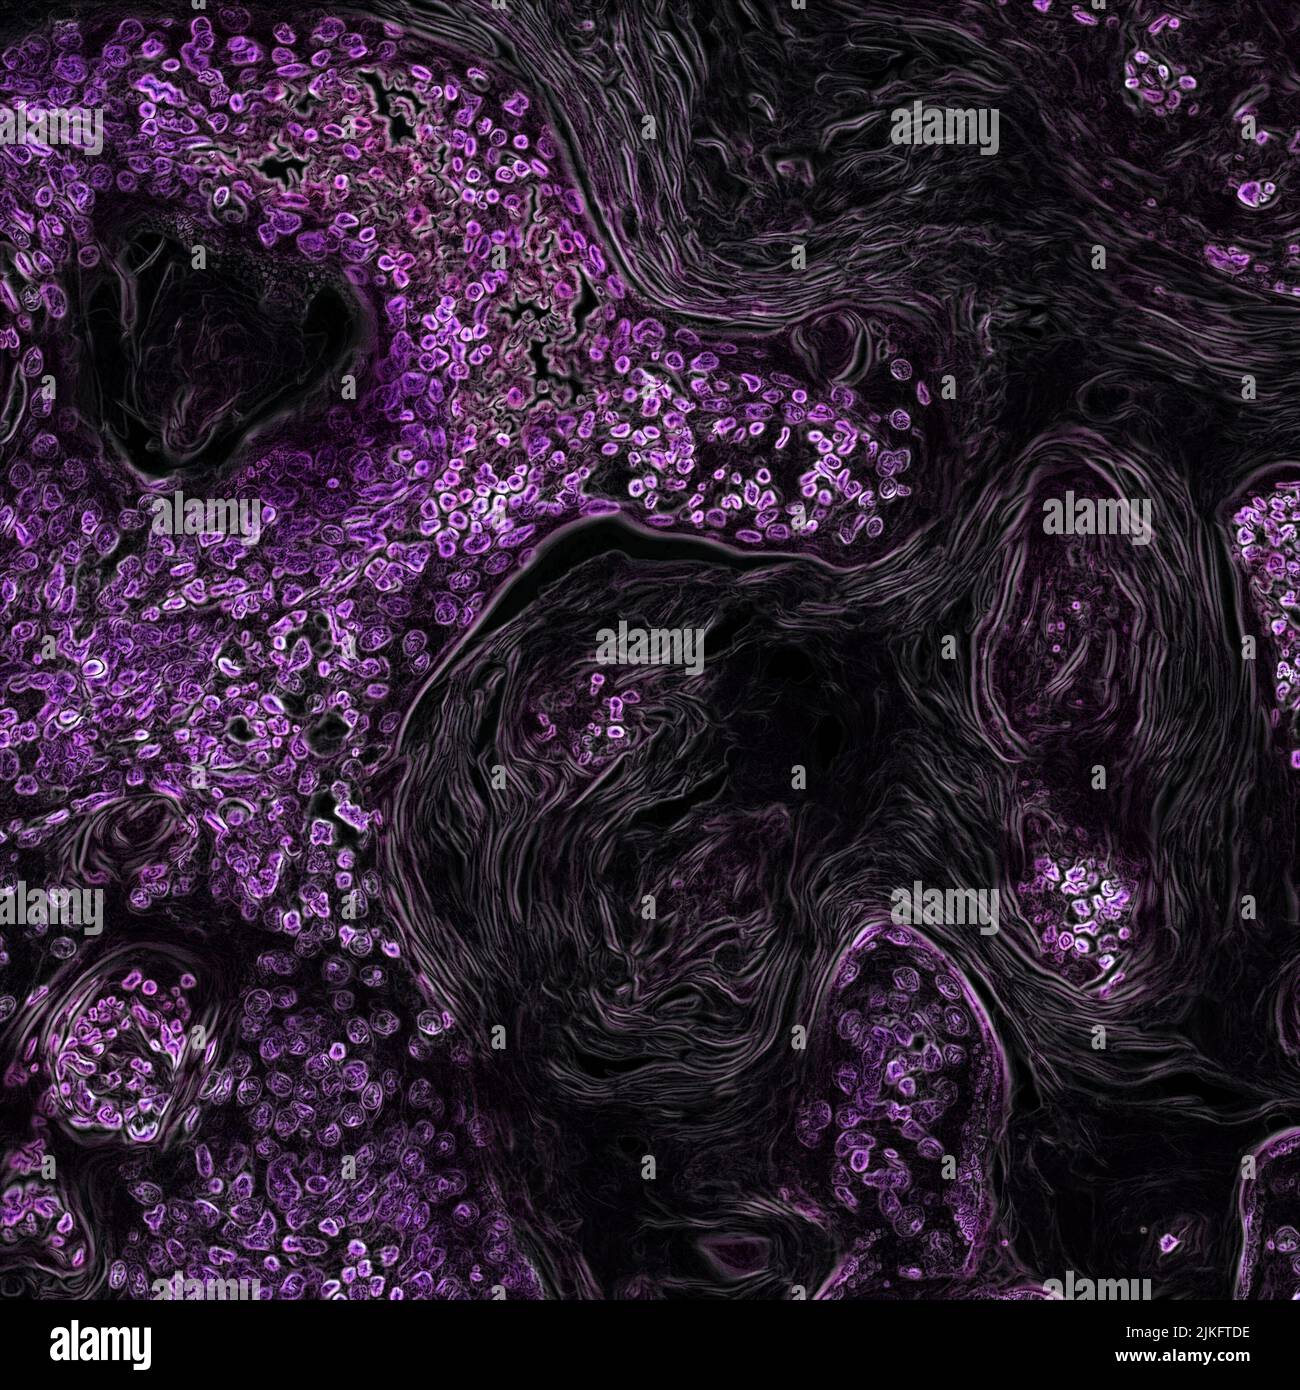 In questa immagine di un modello di topo geneticamente modificato, il cancro ai polmoni causato dall'oncogene Kras è mostrato in viola. Come fattore chiave di molti tipi di cancro, il gene Kras è un obiettivo promettente per le nuove terapie tumorali. Foto Stock